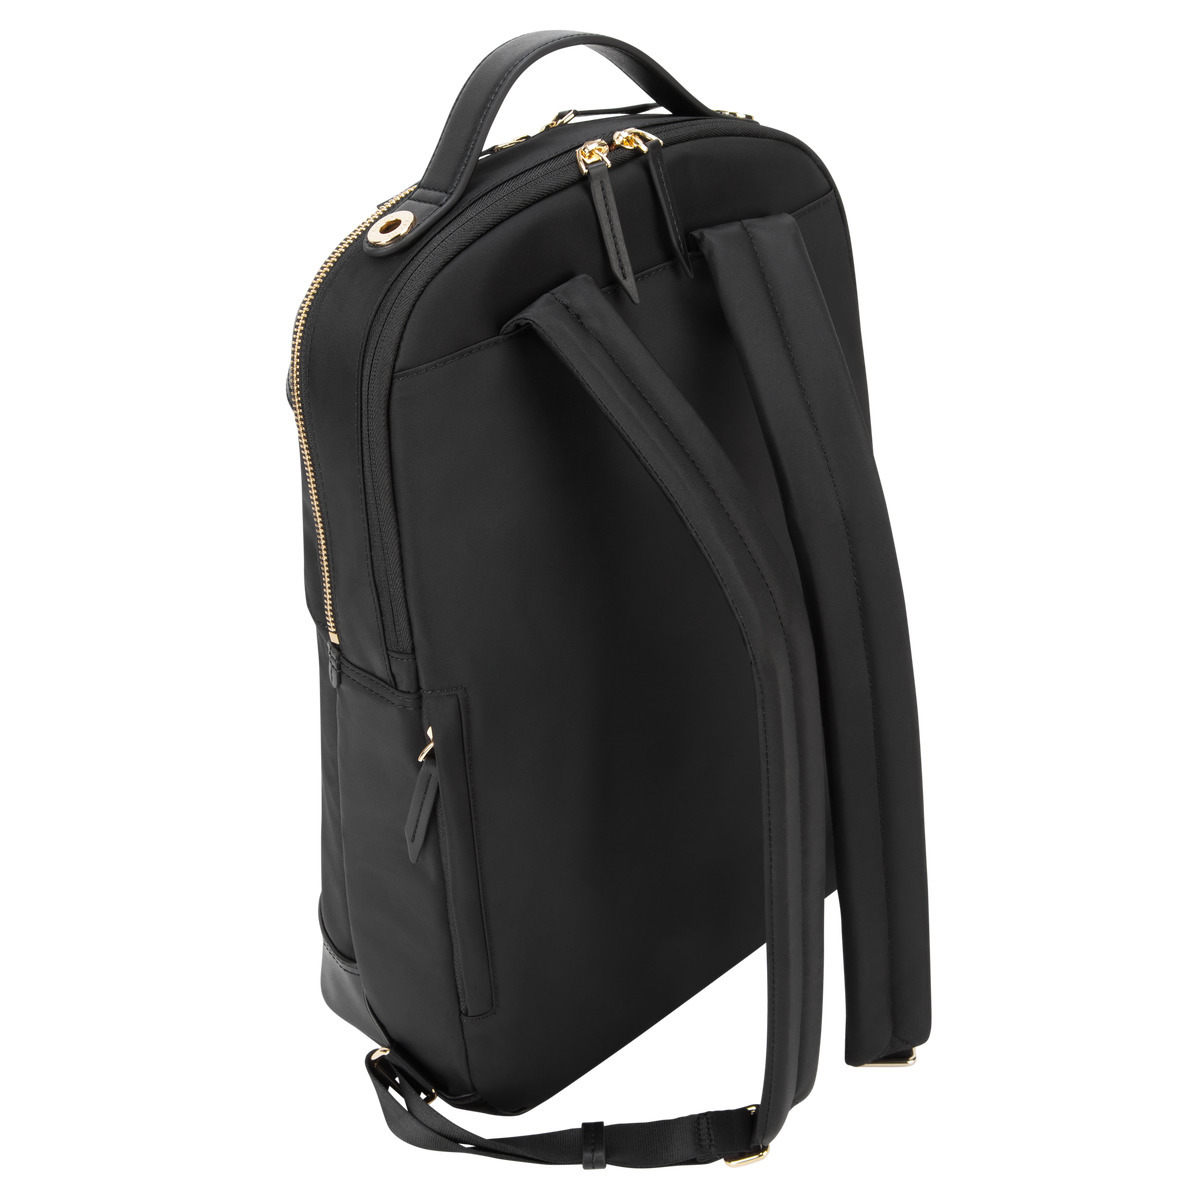 Targus 15" Newport Laptop Backpack, Black - TSB945BT - image 13 of 17